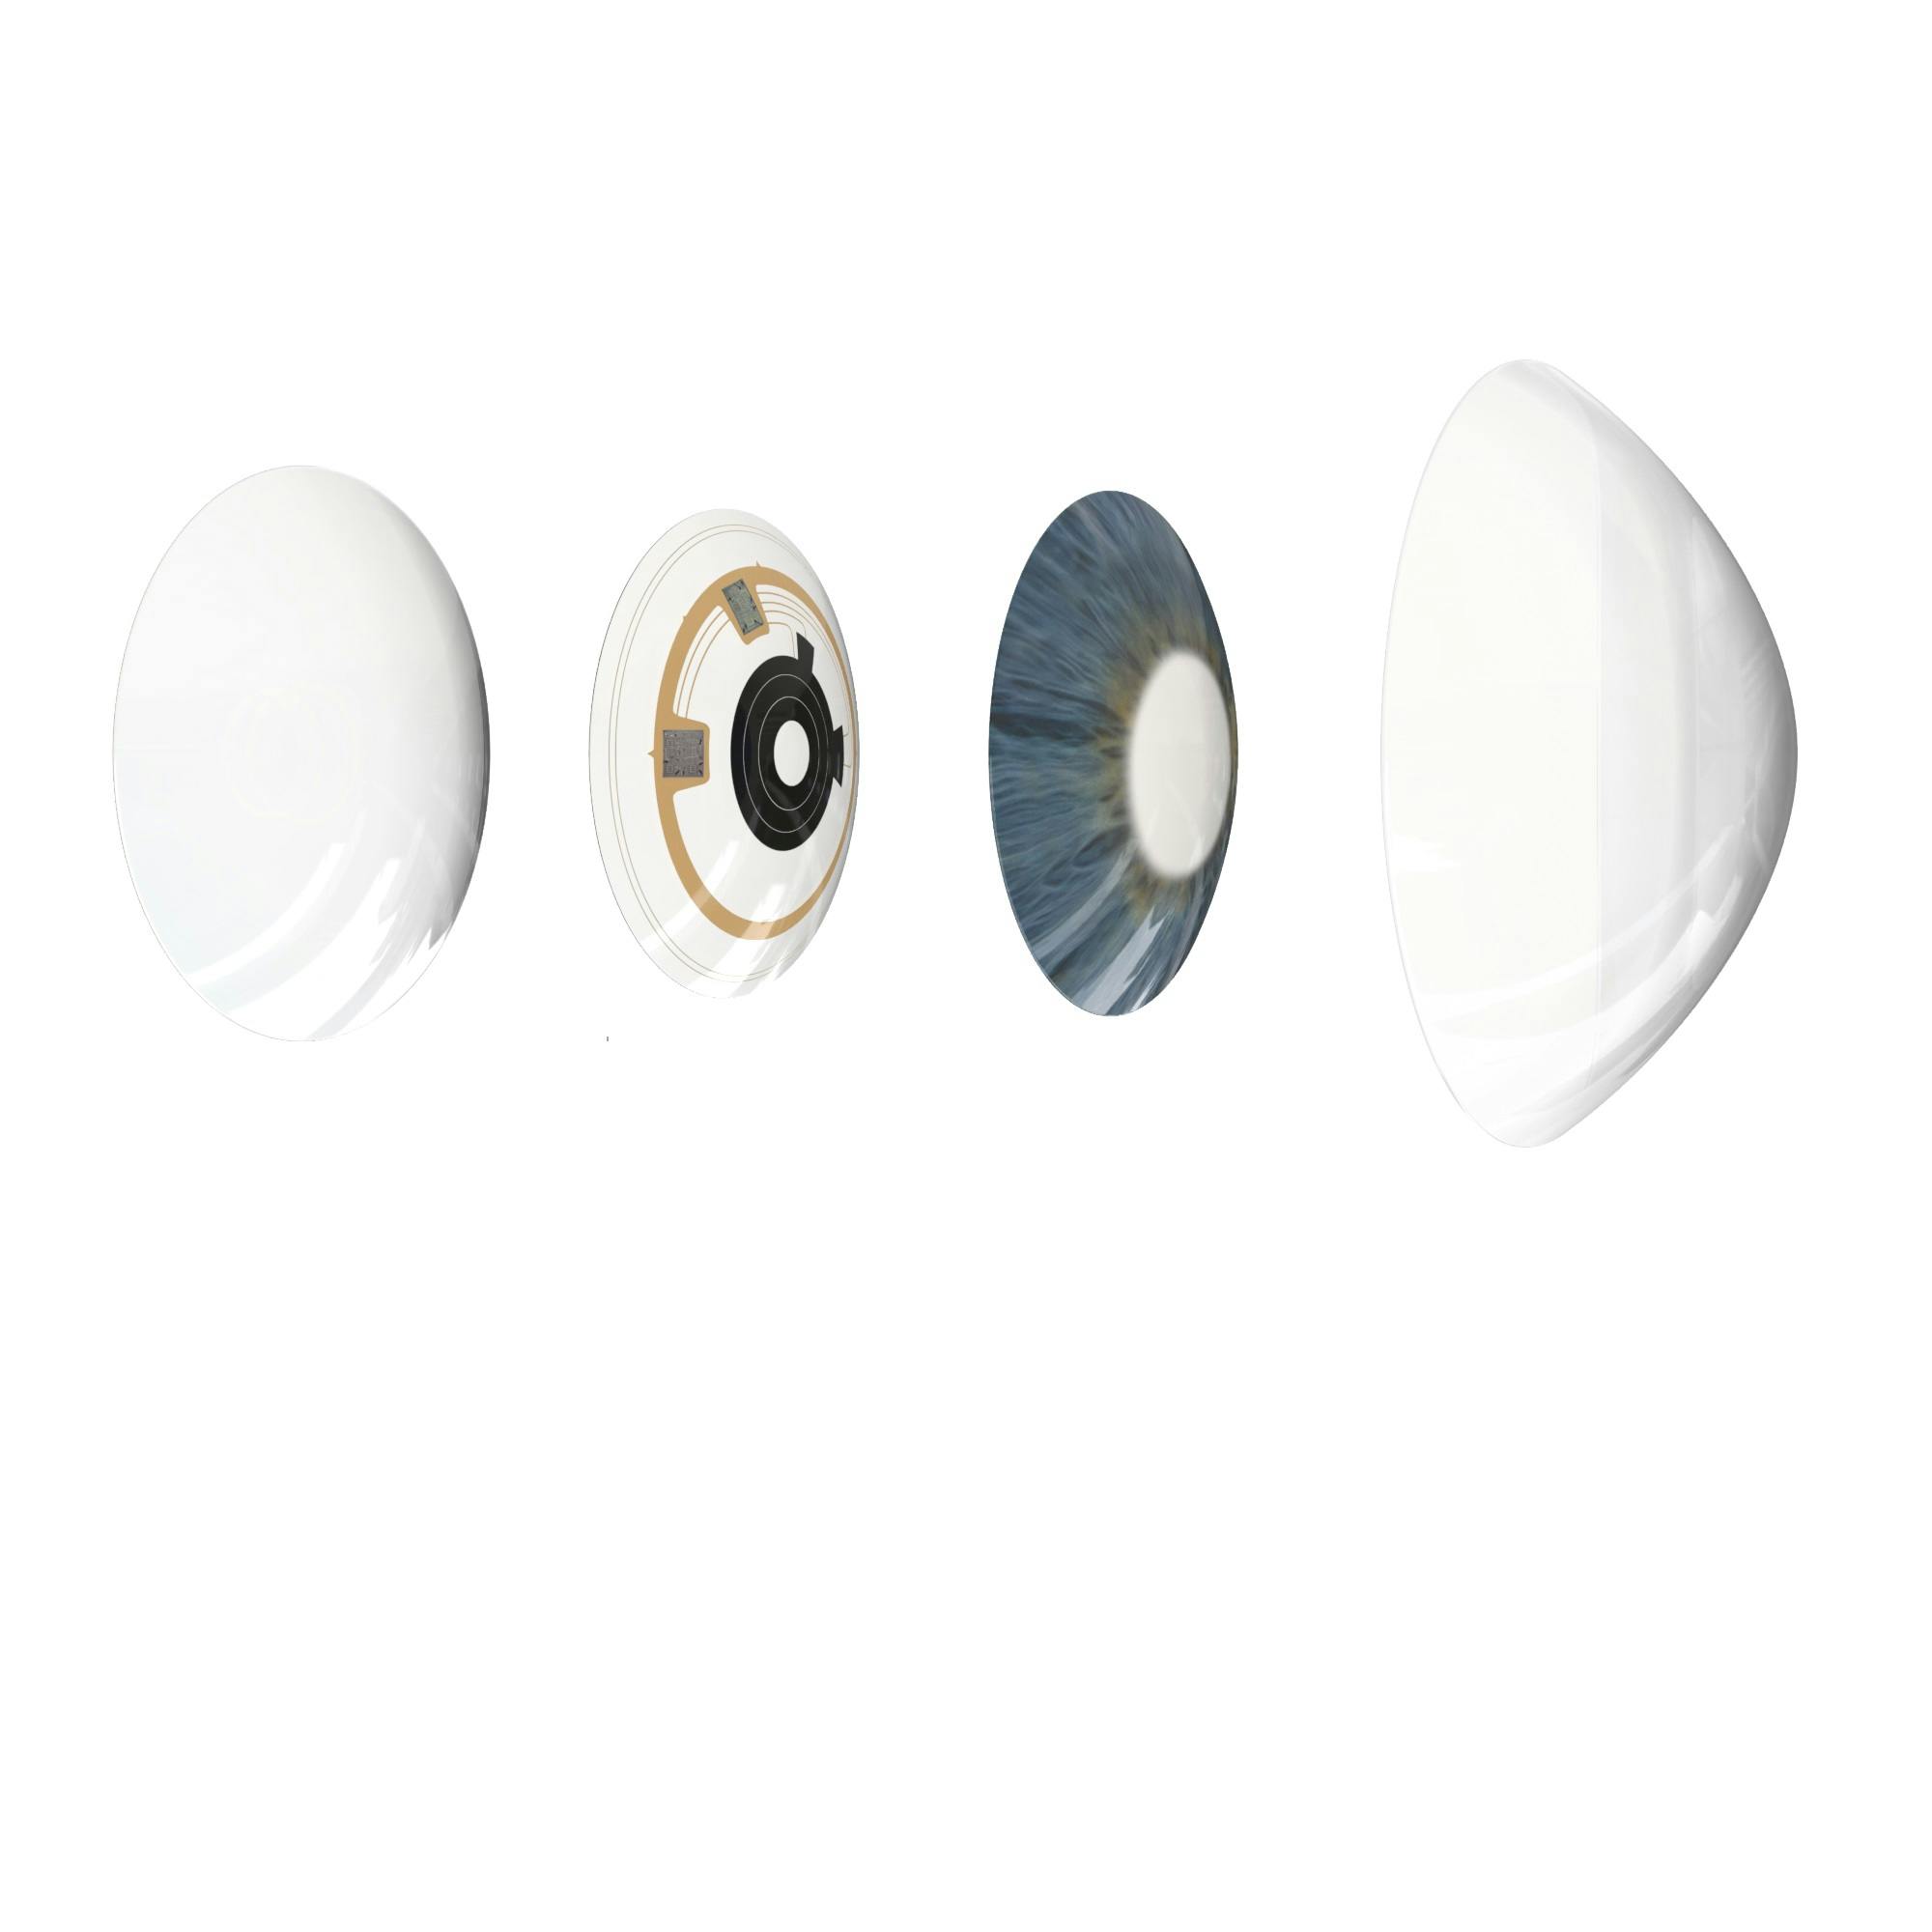 Azalea Smart contact lens